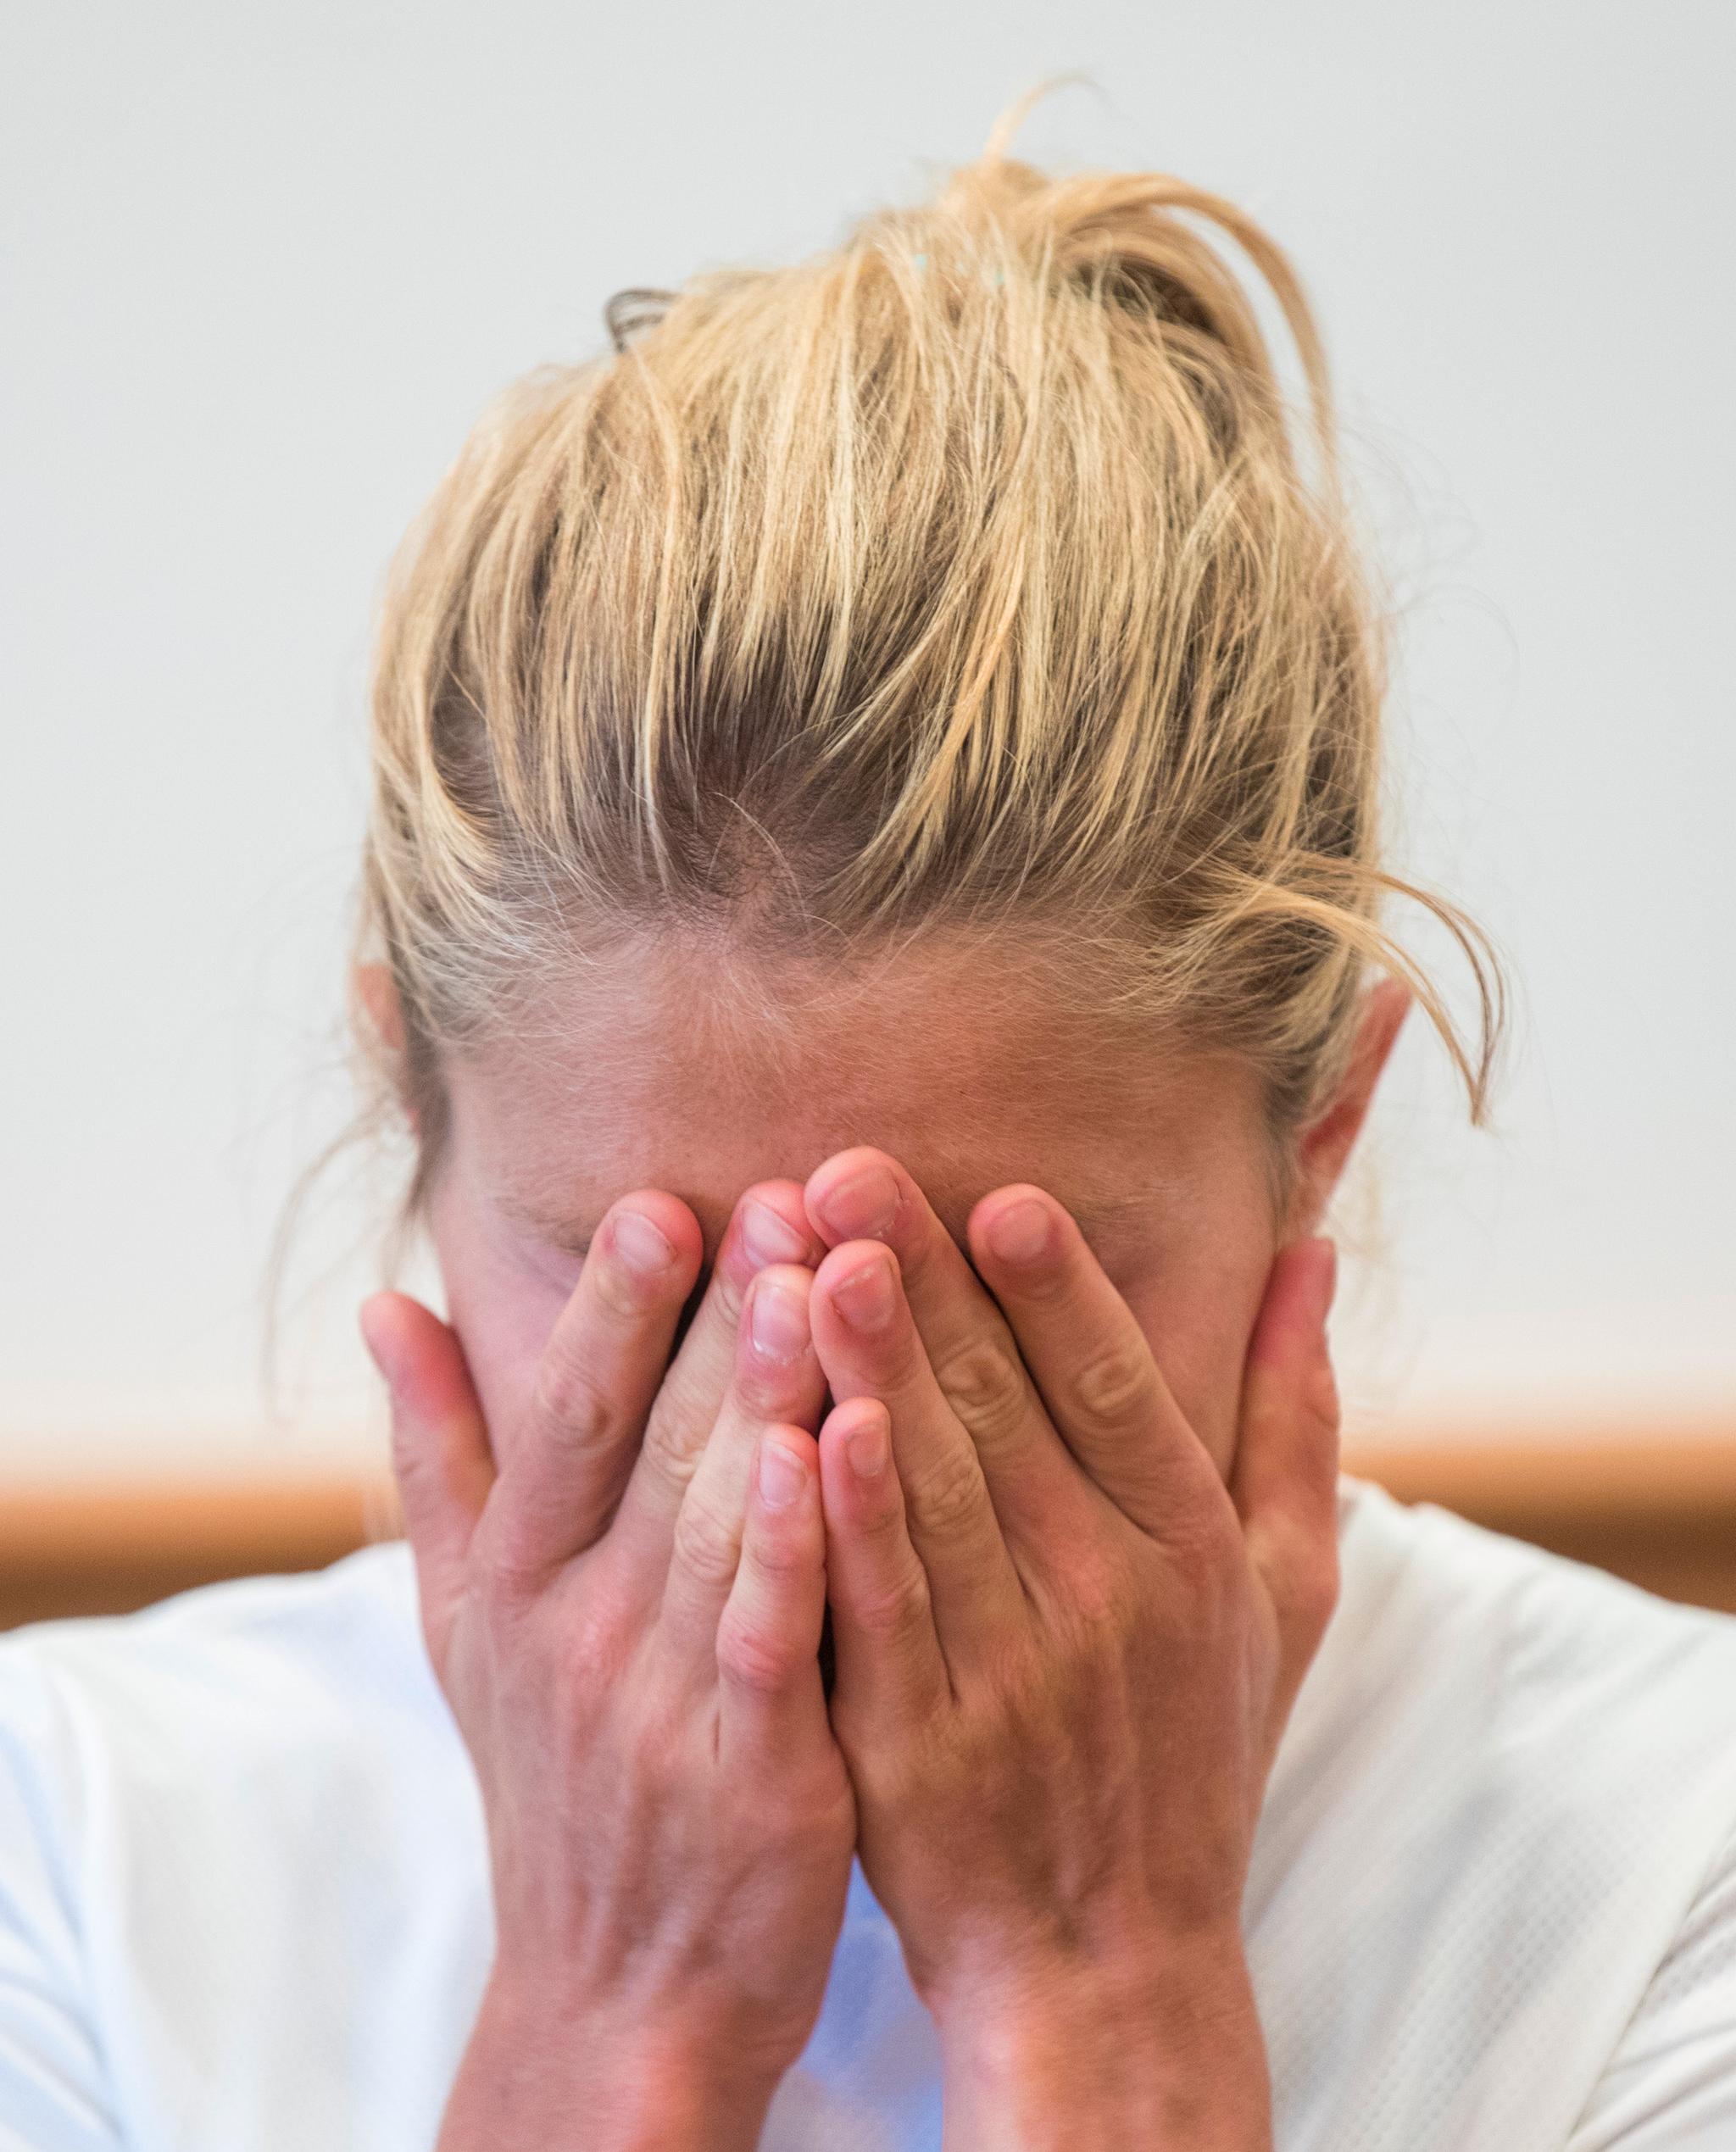 22. august: En nedbrutt Therese Johaug møter pressen i Seiser Alm etter at Idrettens voldgiftsrett (CAS) har fastsatt en endelig dopingdom til 18 måneder.